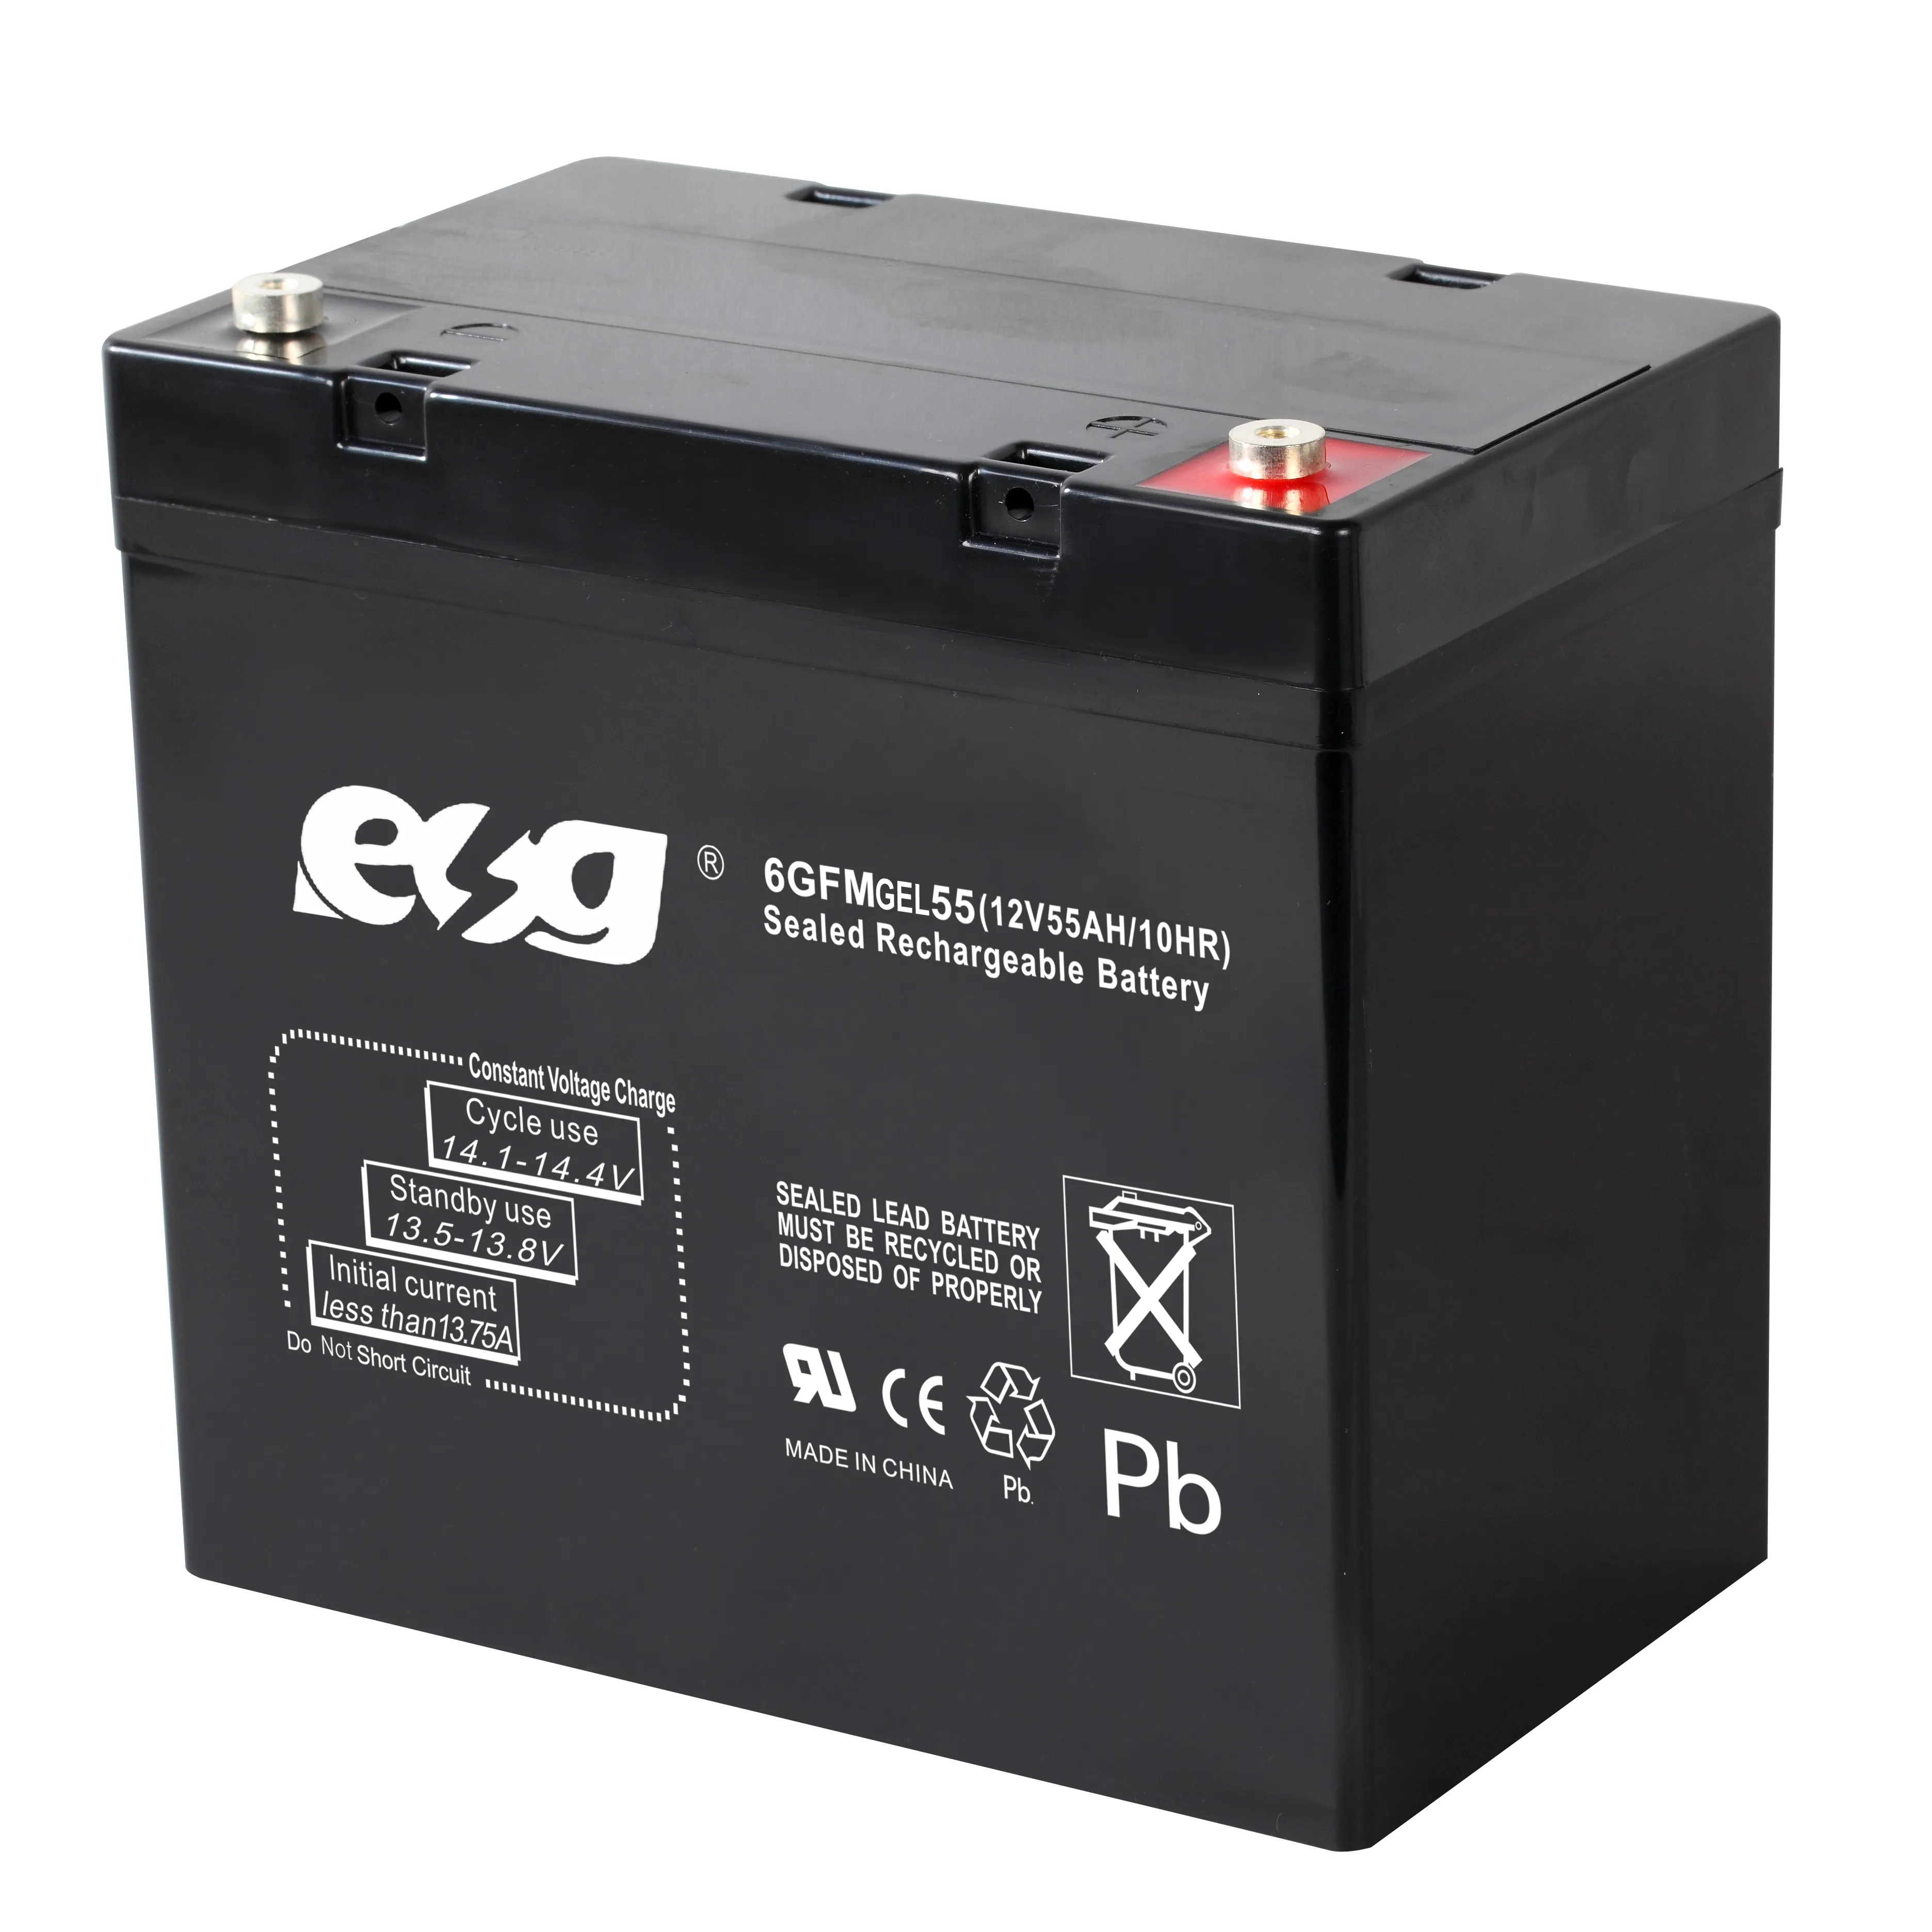 ESG buon prezzo macchina per fare lastre 12V 55Ah batteria al piombo sigillata batteria al piombo per moto 12V